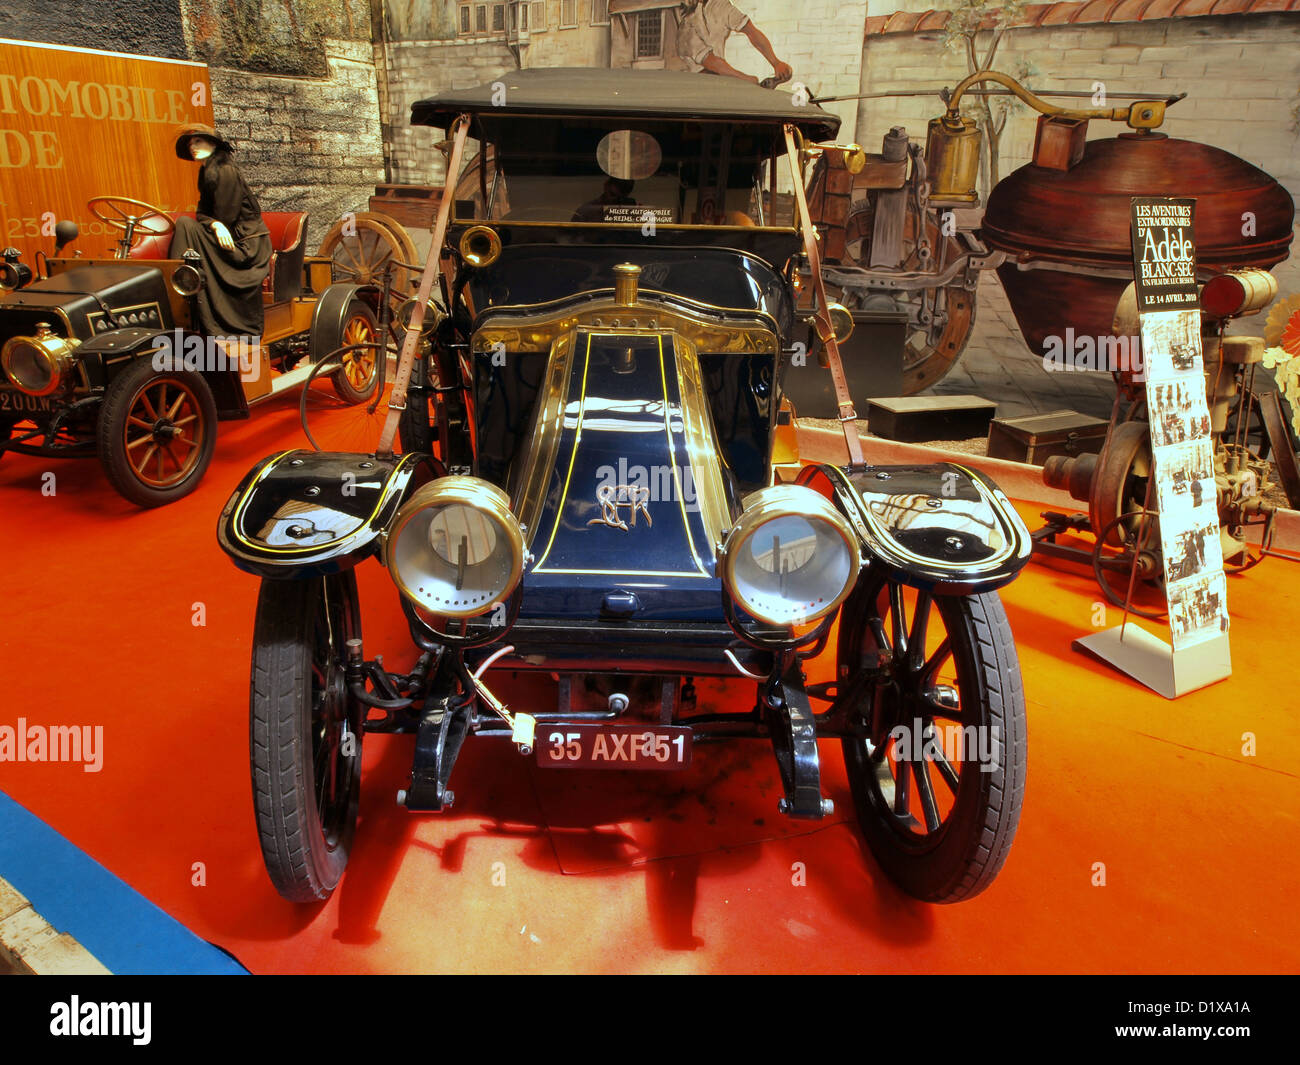 Museo del Automóvil de Reims Champagne 1908 SCAR (Société de Construction Automobile de Reims) Foto de stock